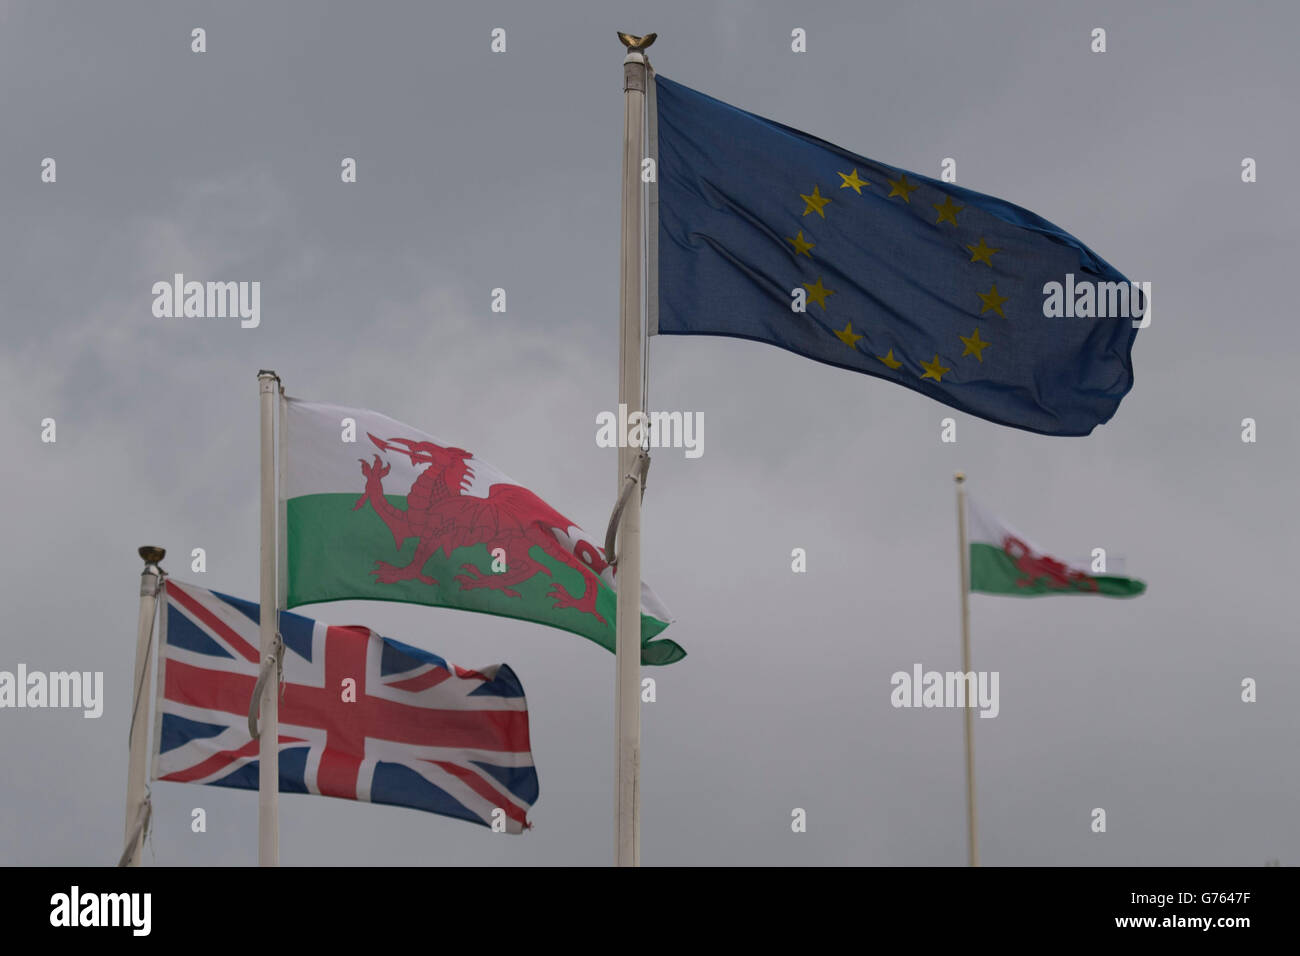 Un drapeau gallois au Pays de Galles entre une Union Jack et un drapeau de l'Union européenne. Banque D'Images